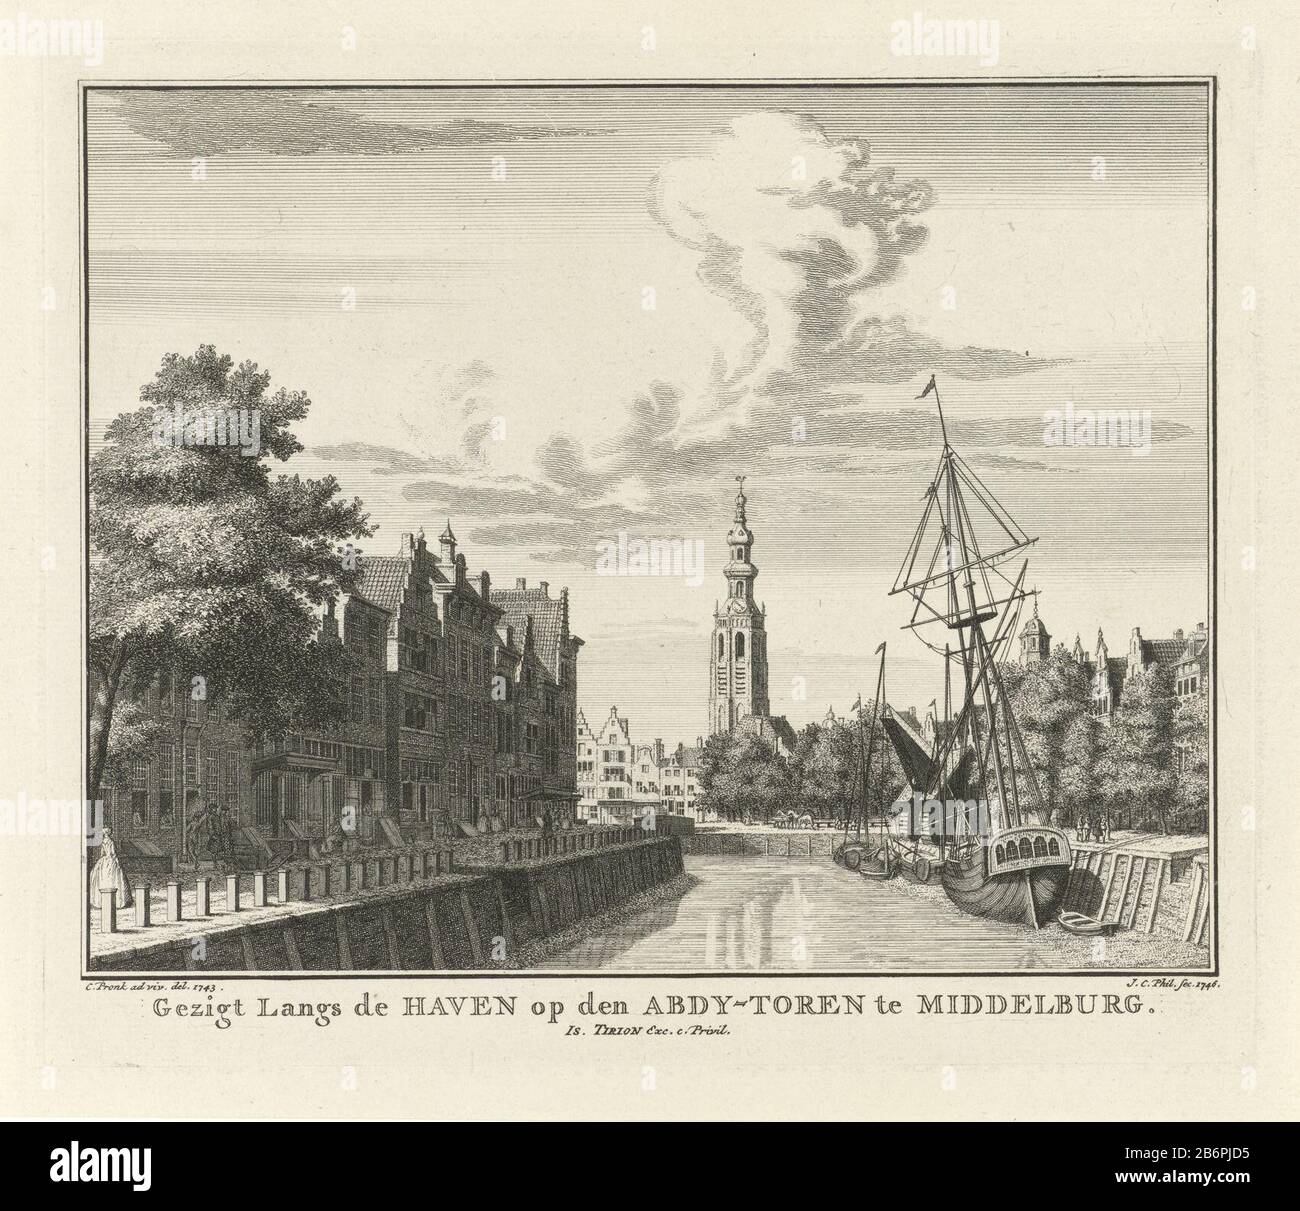 Gezicht op de Lange Jan (Abdijtoren) te Middelburg, 1743 gezigt wald de  haven op den Abdy-toren te Middelburg (objeto de titel op) Vista de la  Lange Jan, también conocida como la Torre